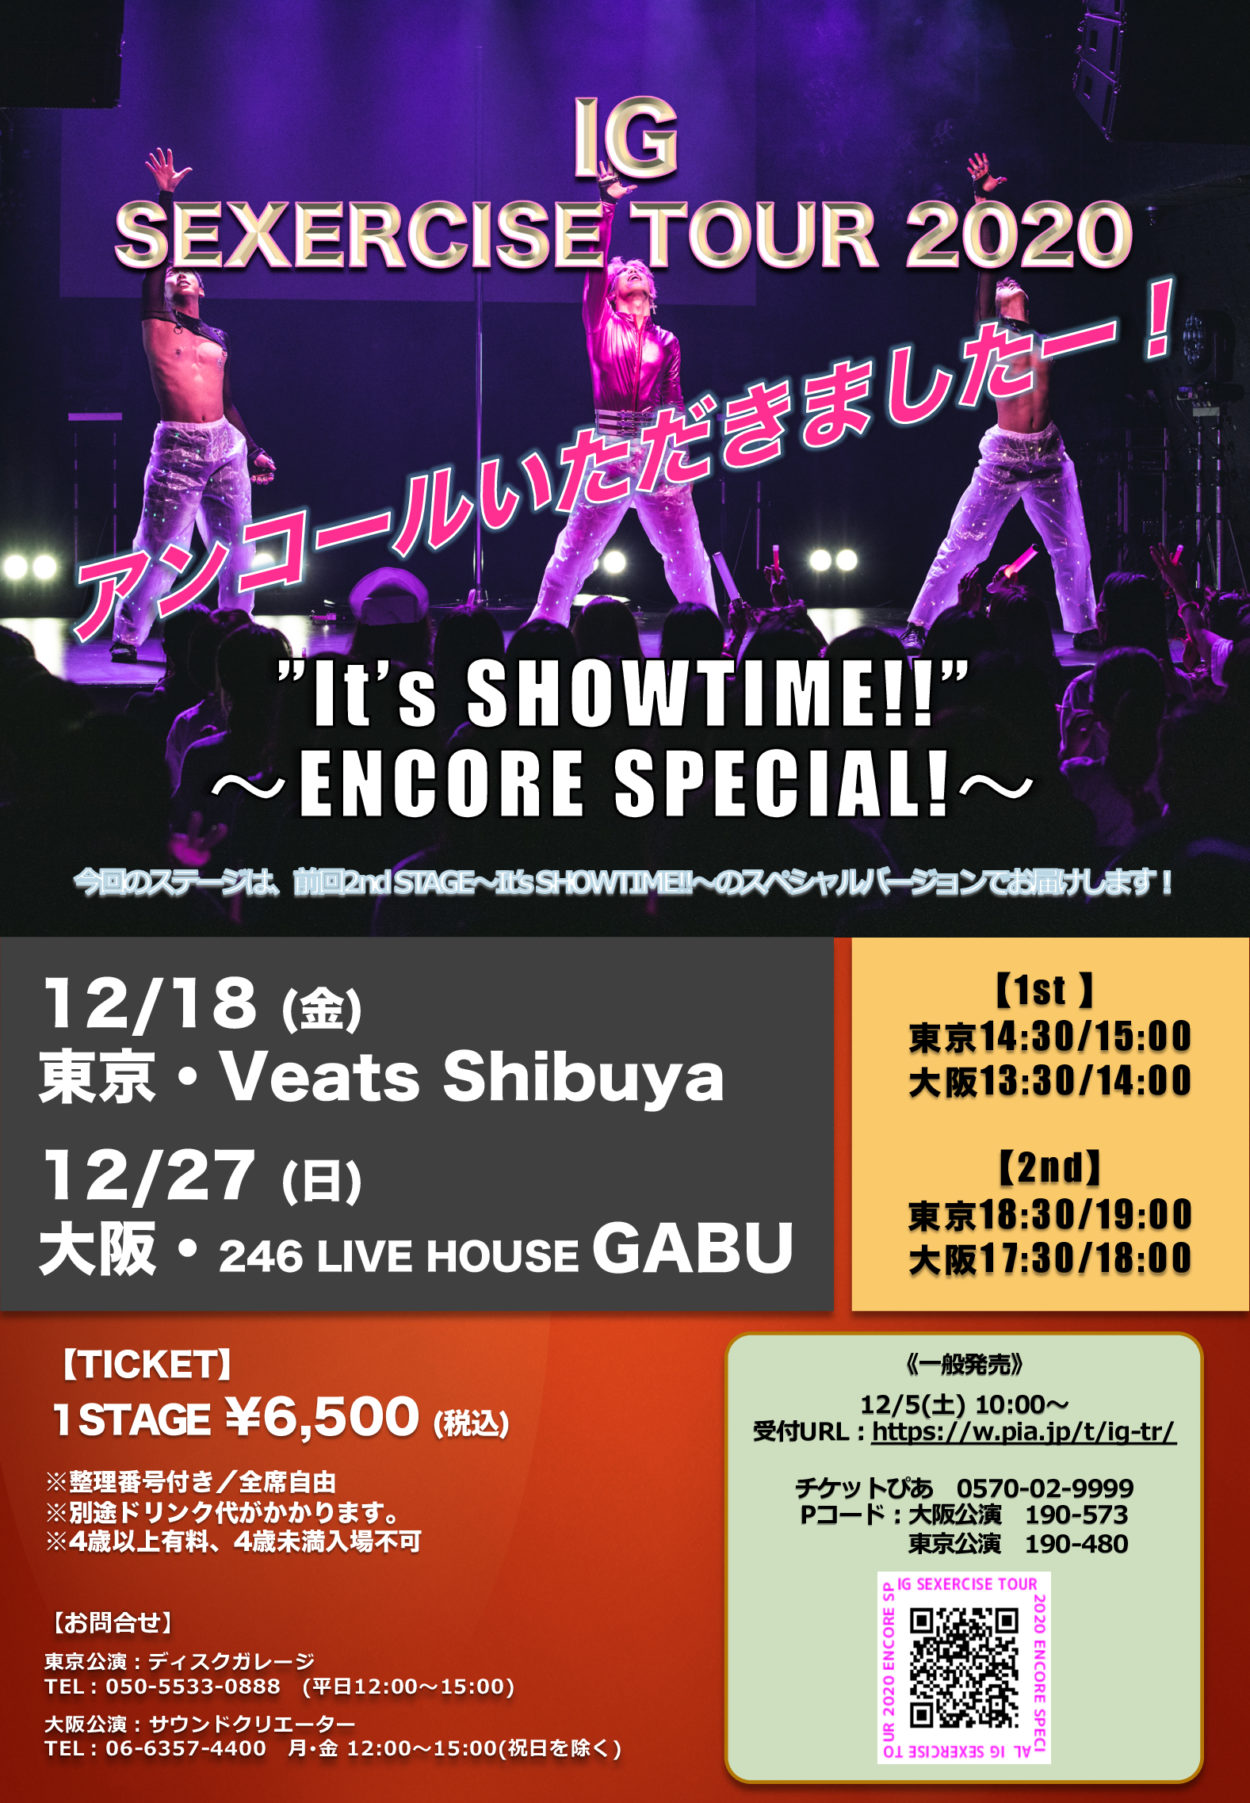 IG SEXERCISE TOUR 2020~アンコール公演~ チケット一般発売のお知らせ